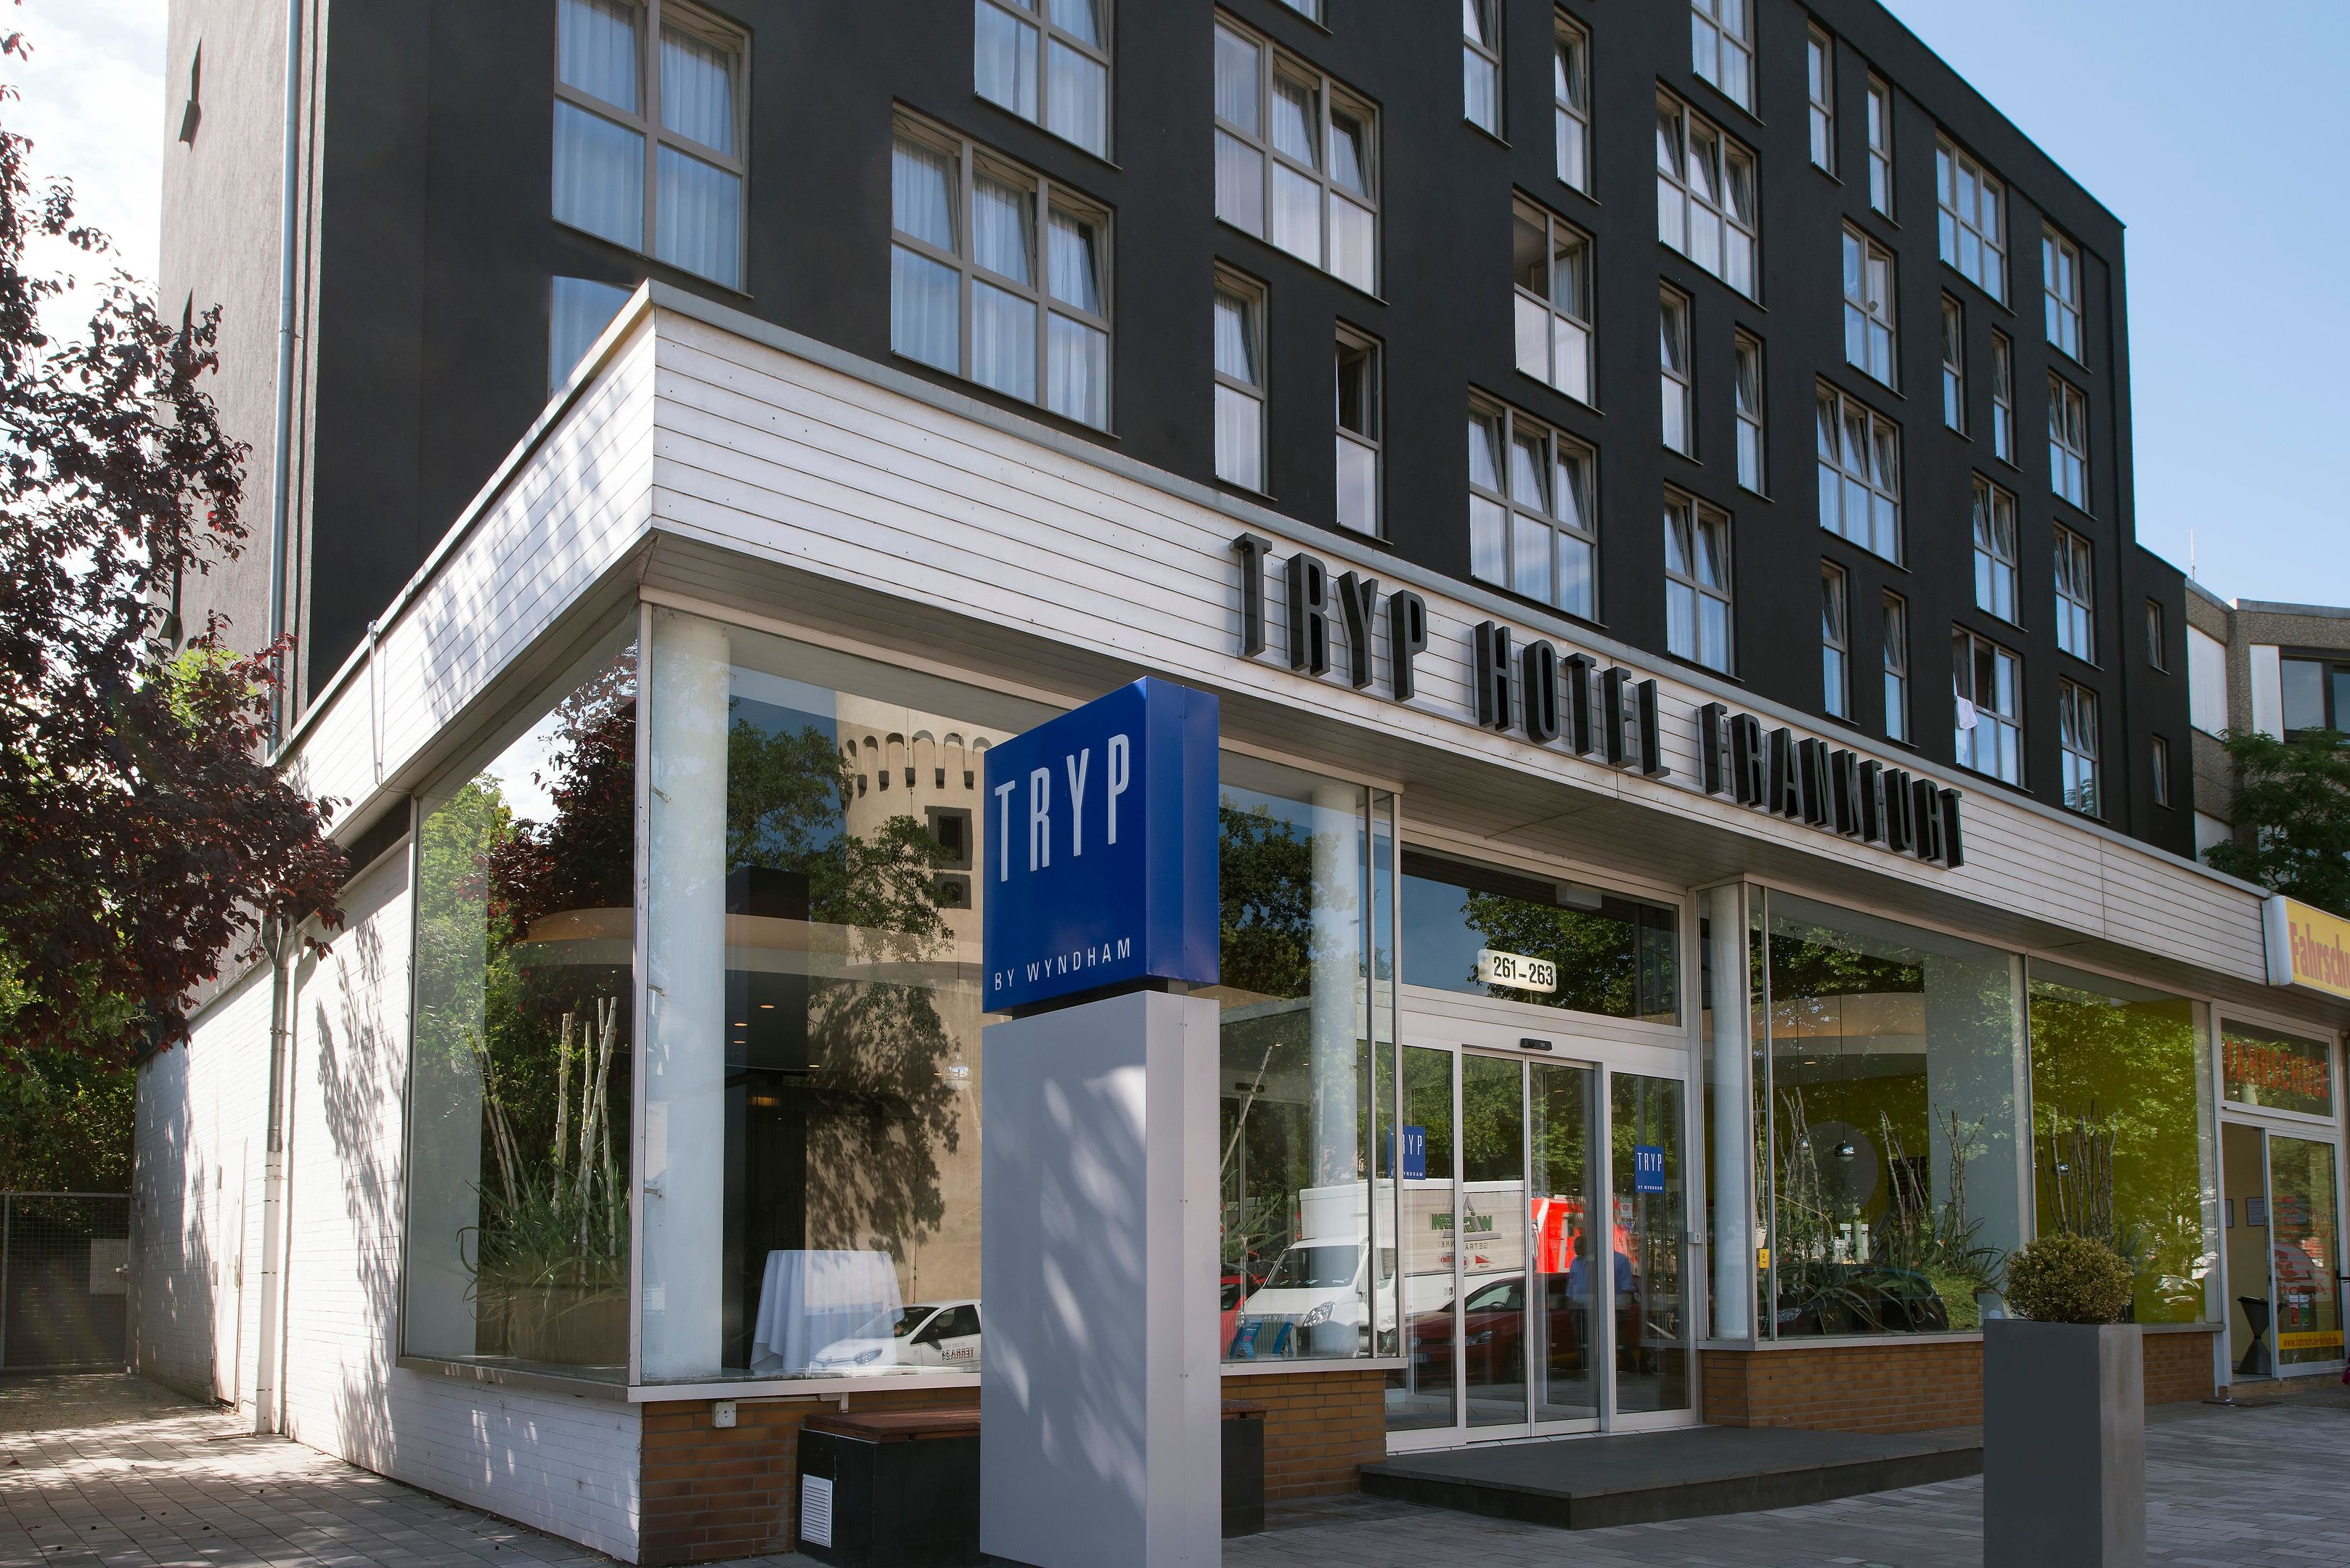 TRYP by Wyndham Frankfurt Hotel